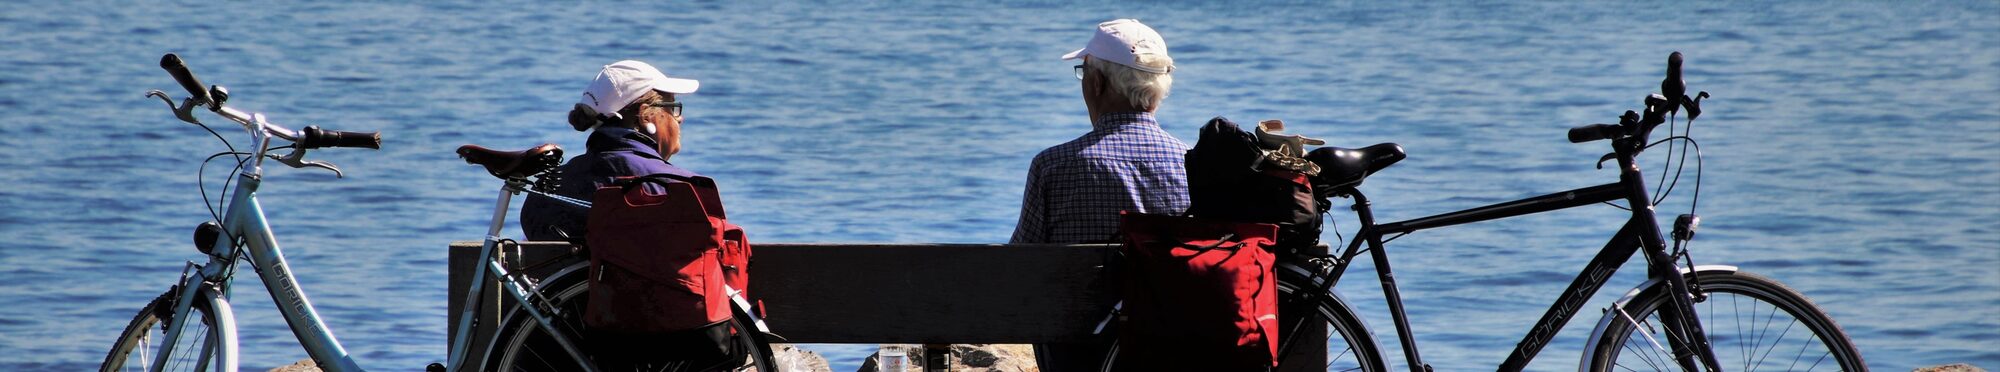 Zwei ältere Menschen haben ihre Fahrräder an einer Bank abgestellt und schauen auf den See